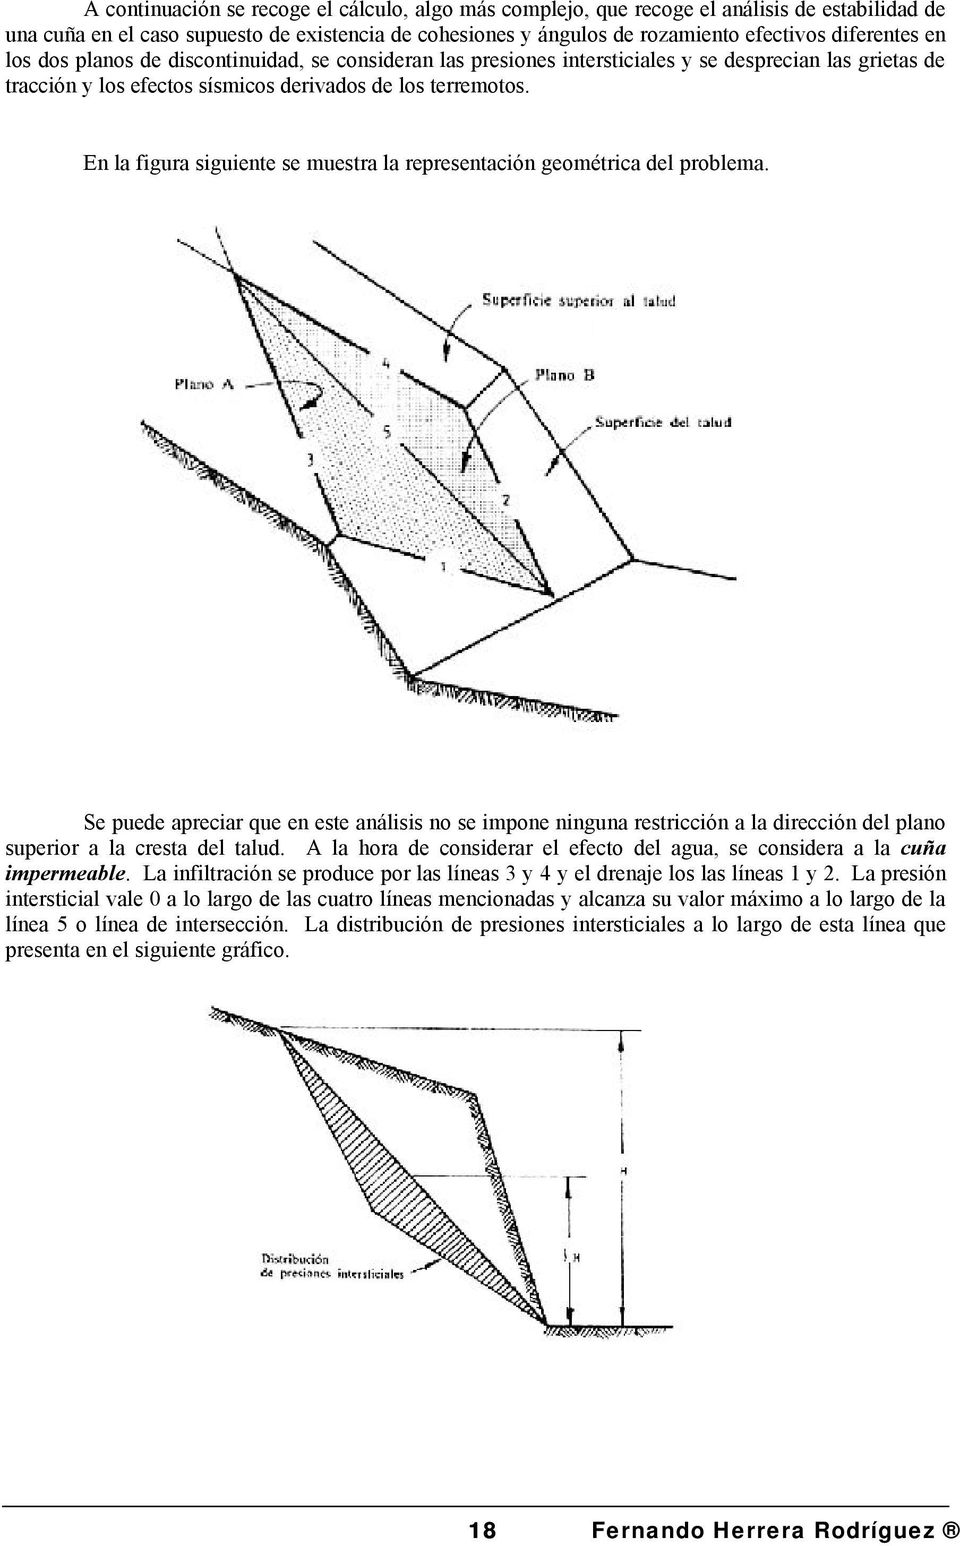 En la figura siguiente se muestra la representación geométrica del problema.